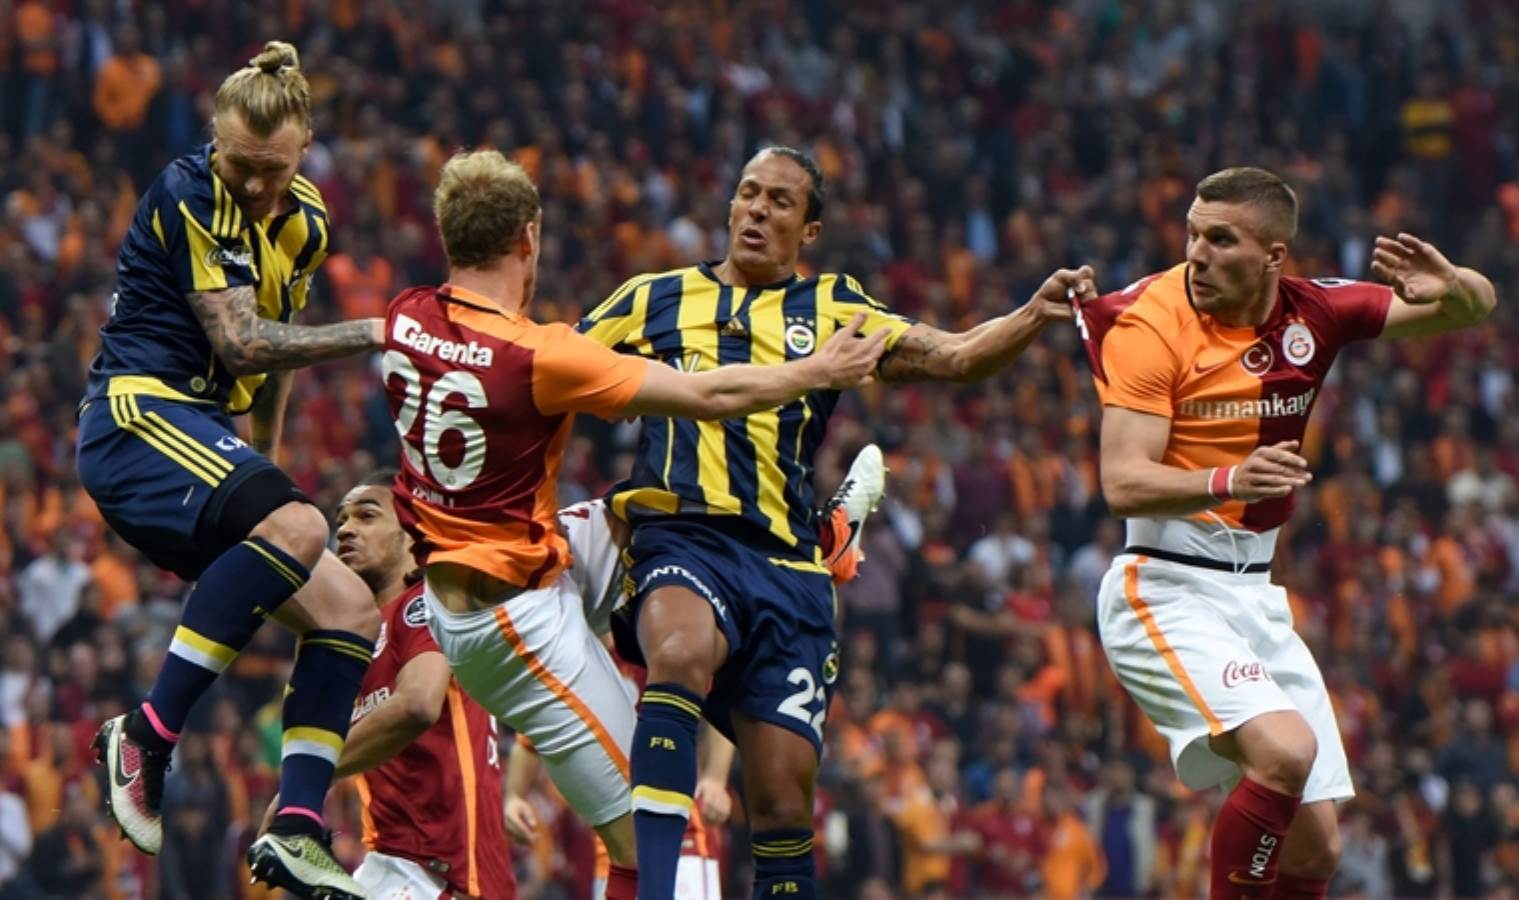 Eski Fenerbahçeliden derbi itirafı! 'Benim için çok özeldi'